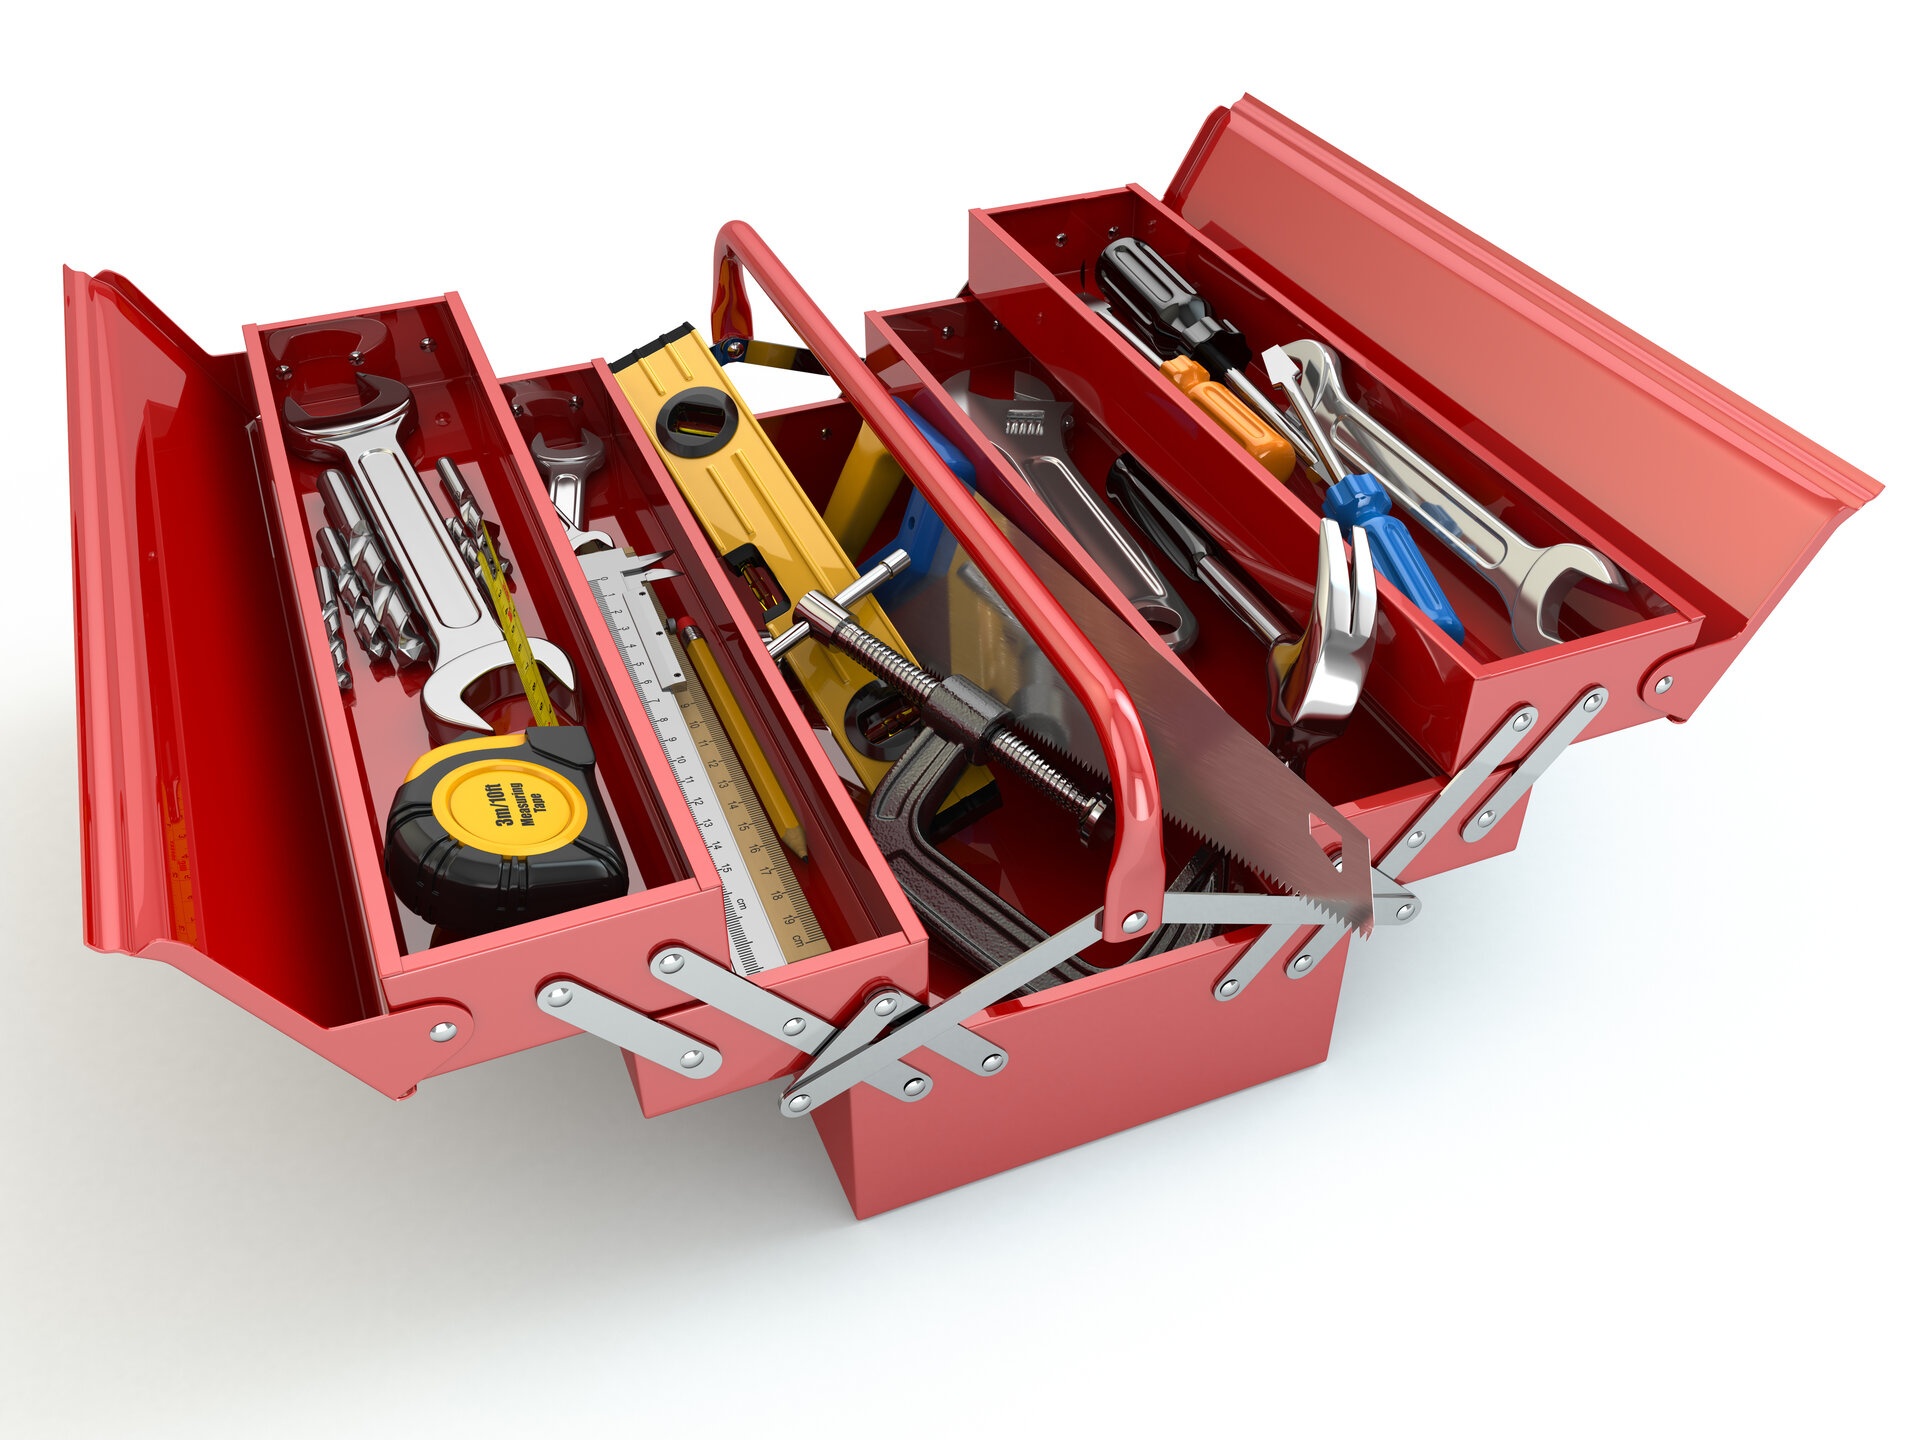 Geöffneter Werkzeugkasten mit Werkzeugen